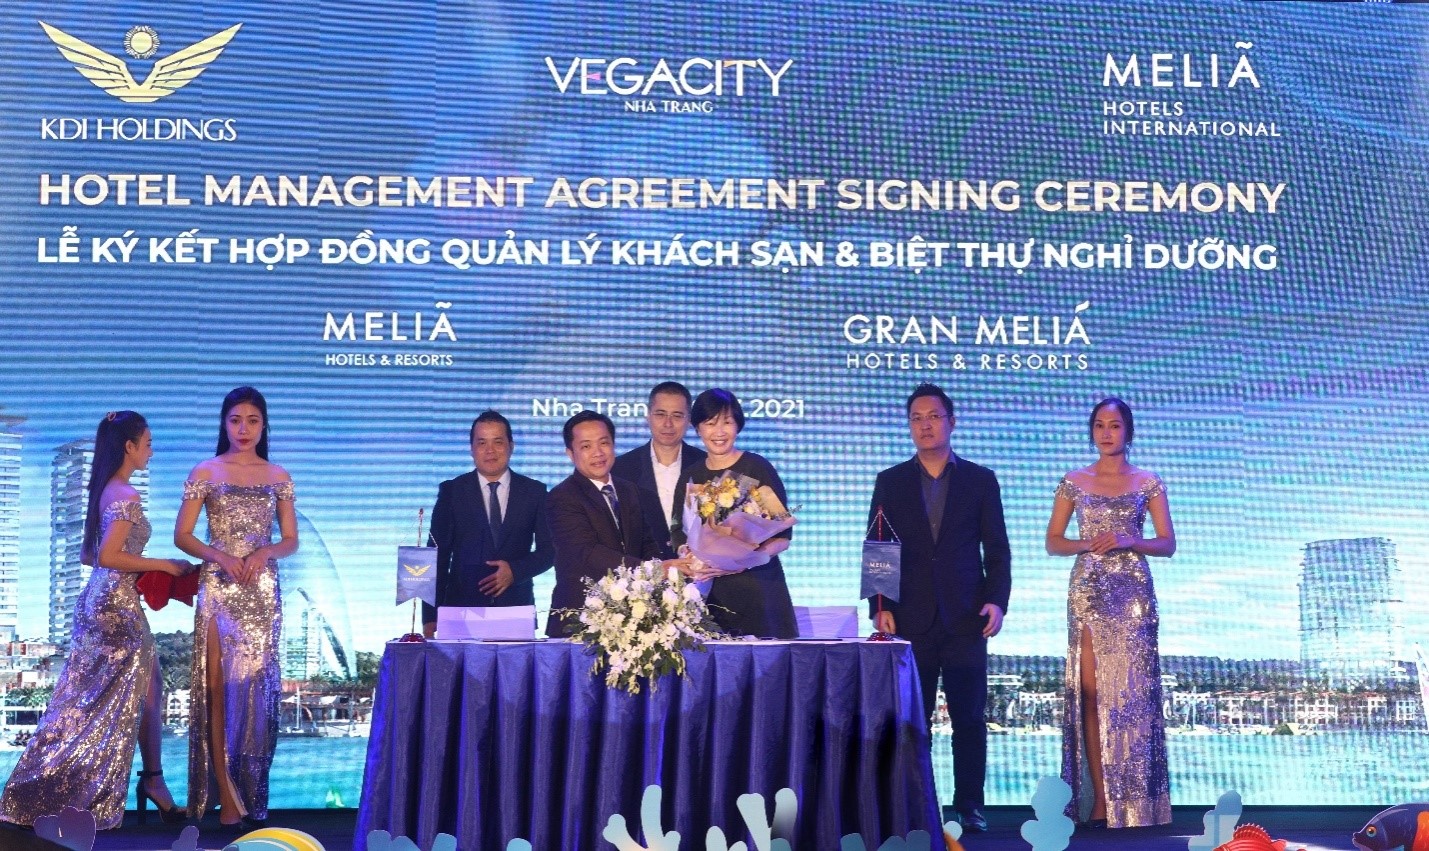 Lễ ký kết hợp đồng quản lý khách sạn và biệt thự nghỉ dưỡng giữa KDI Holdings và Melia Hotels International.